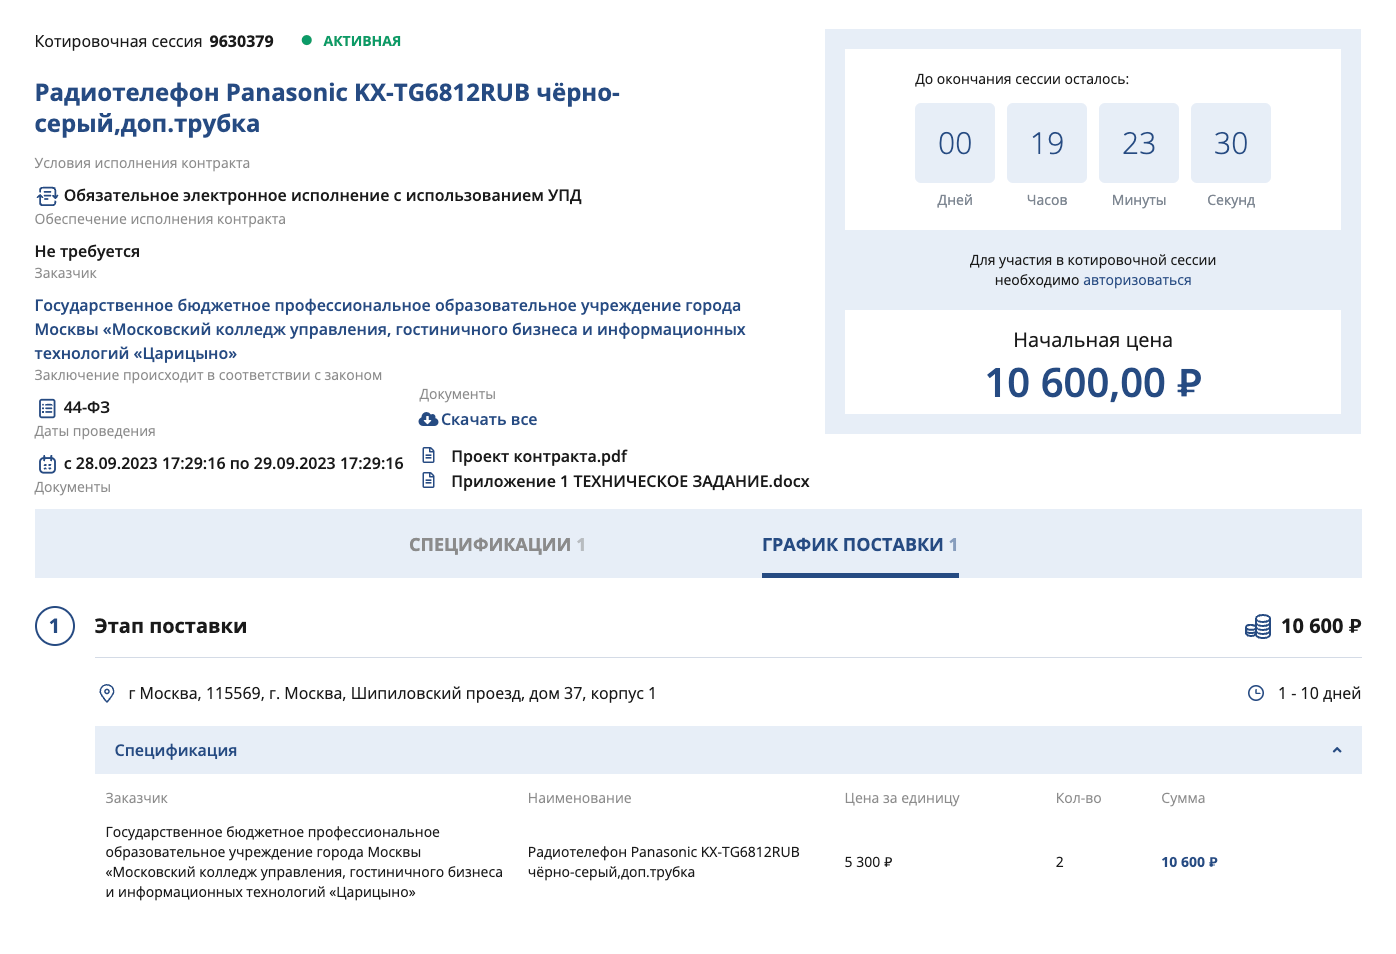 Колледж хочет купить два телефона марки Panasonic. Источник: zakupki.mos.ru